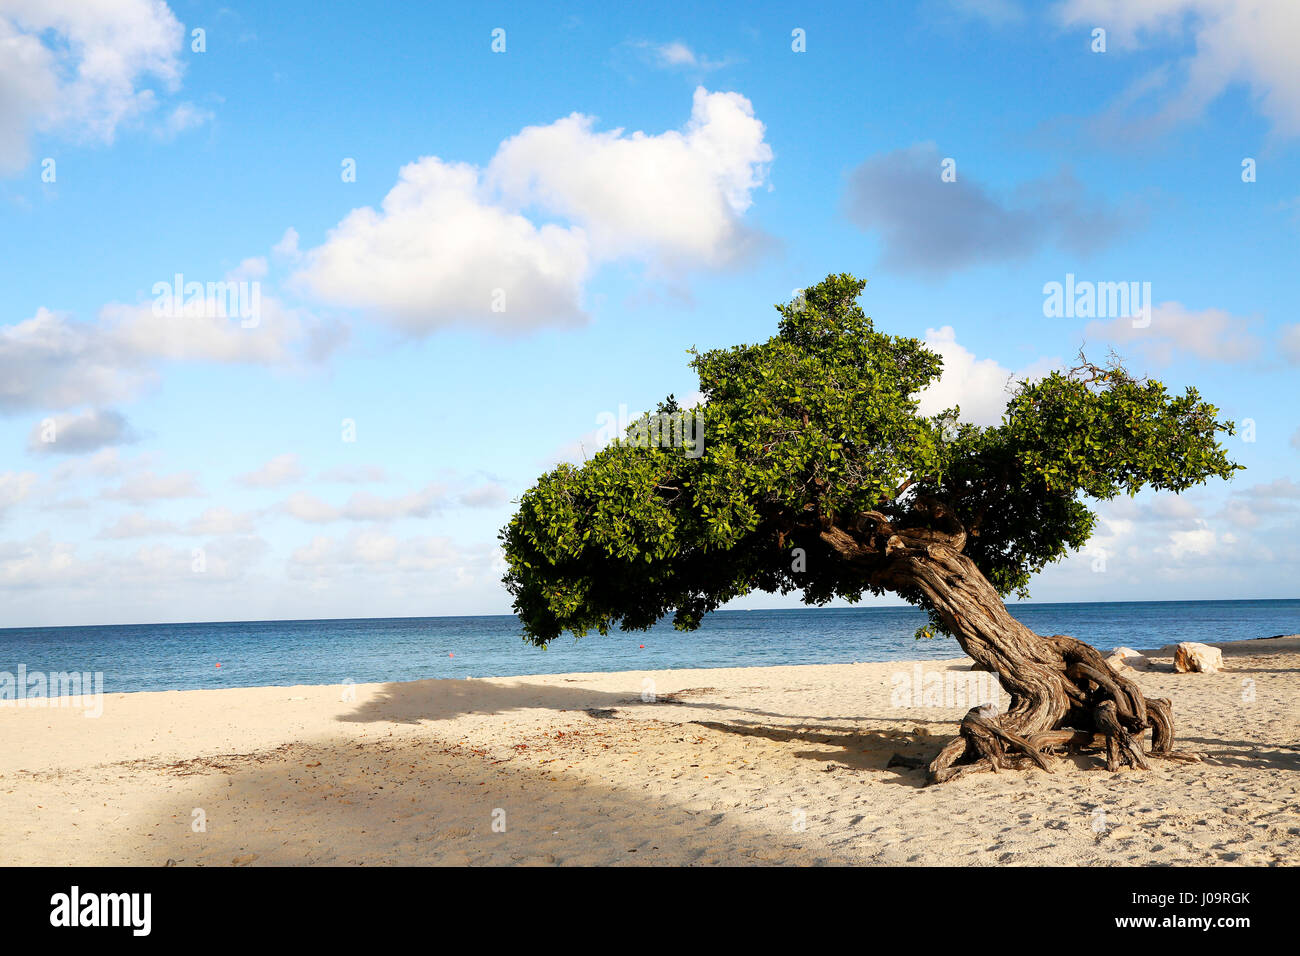 Le migliori spiagge di Aruba. Eagle Beach con il famoso albero fofoti, spesso chiamato Divi Divi tree per errore Foto Stock